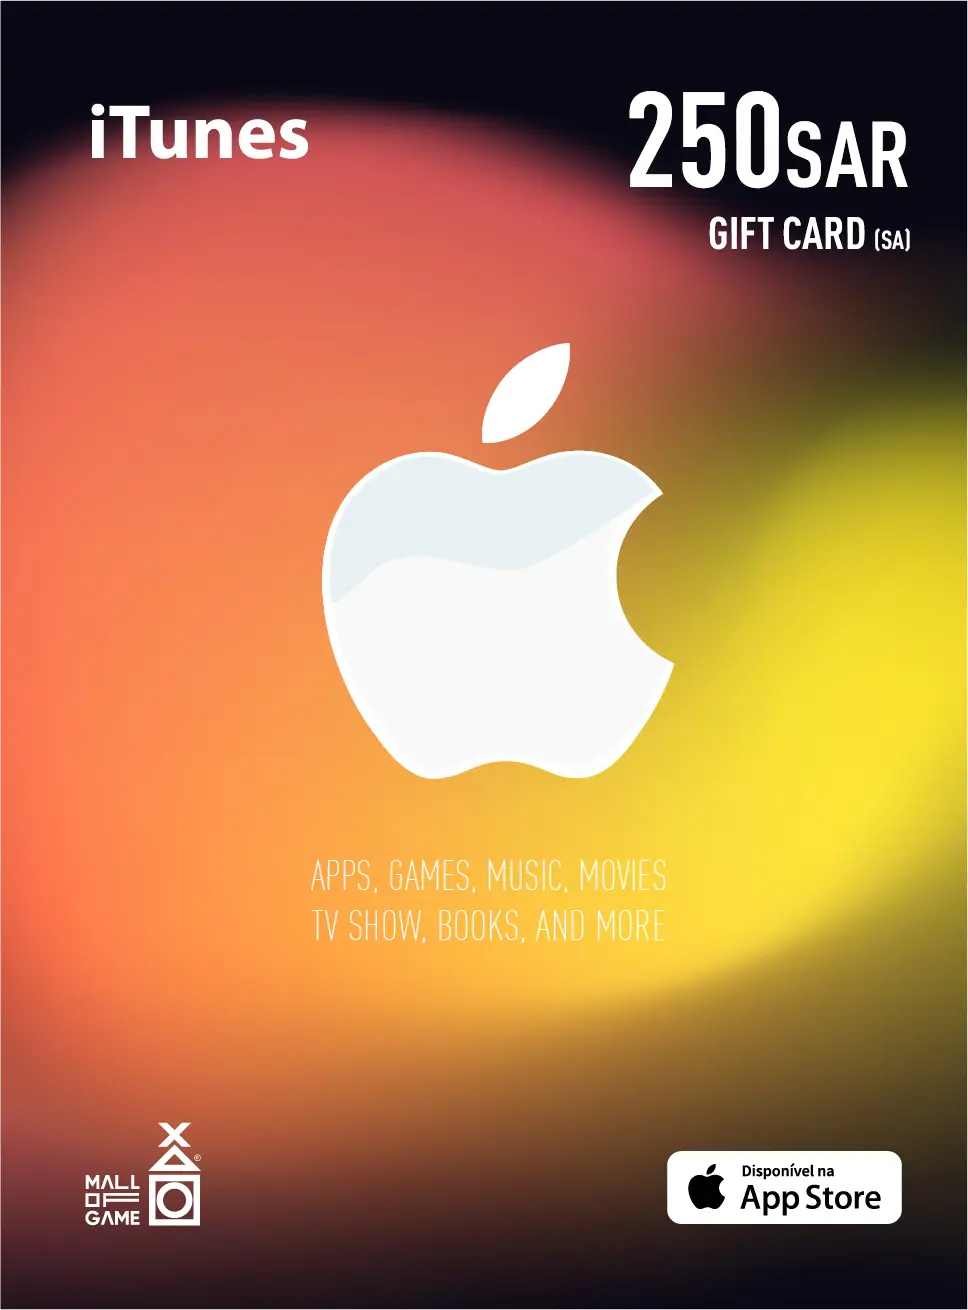 iTunes SAR250 Gift Card (SA)